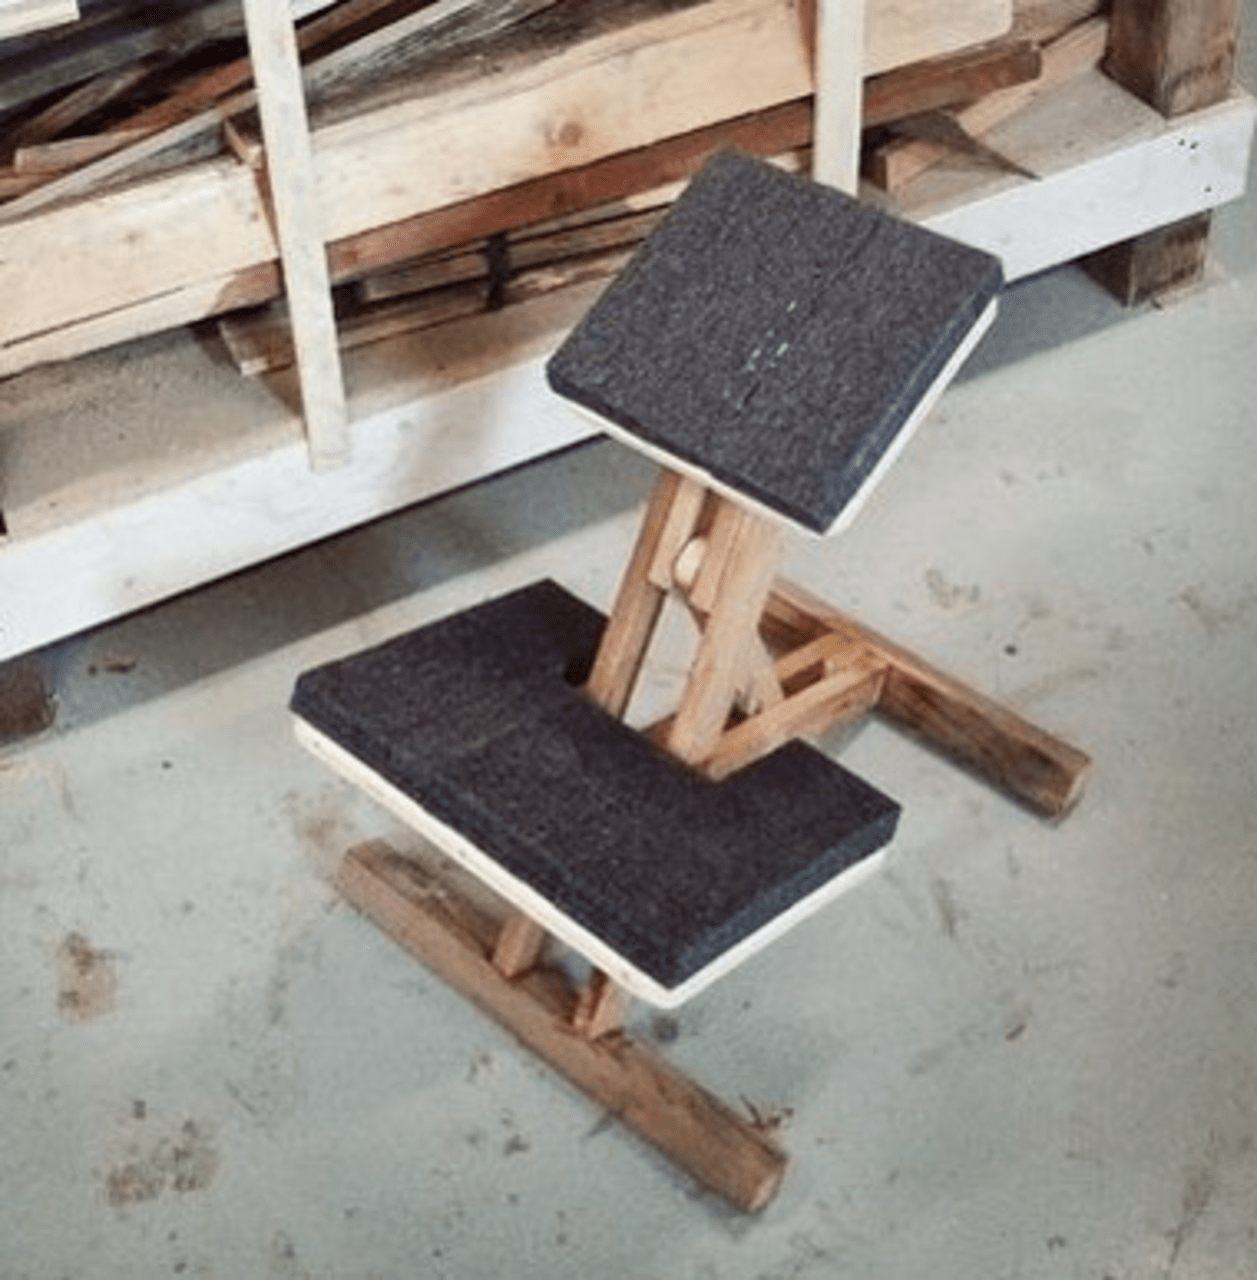 Показания к использованию коленного стула, его разновидности 81 - ДиванеТТо